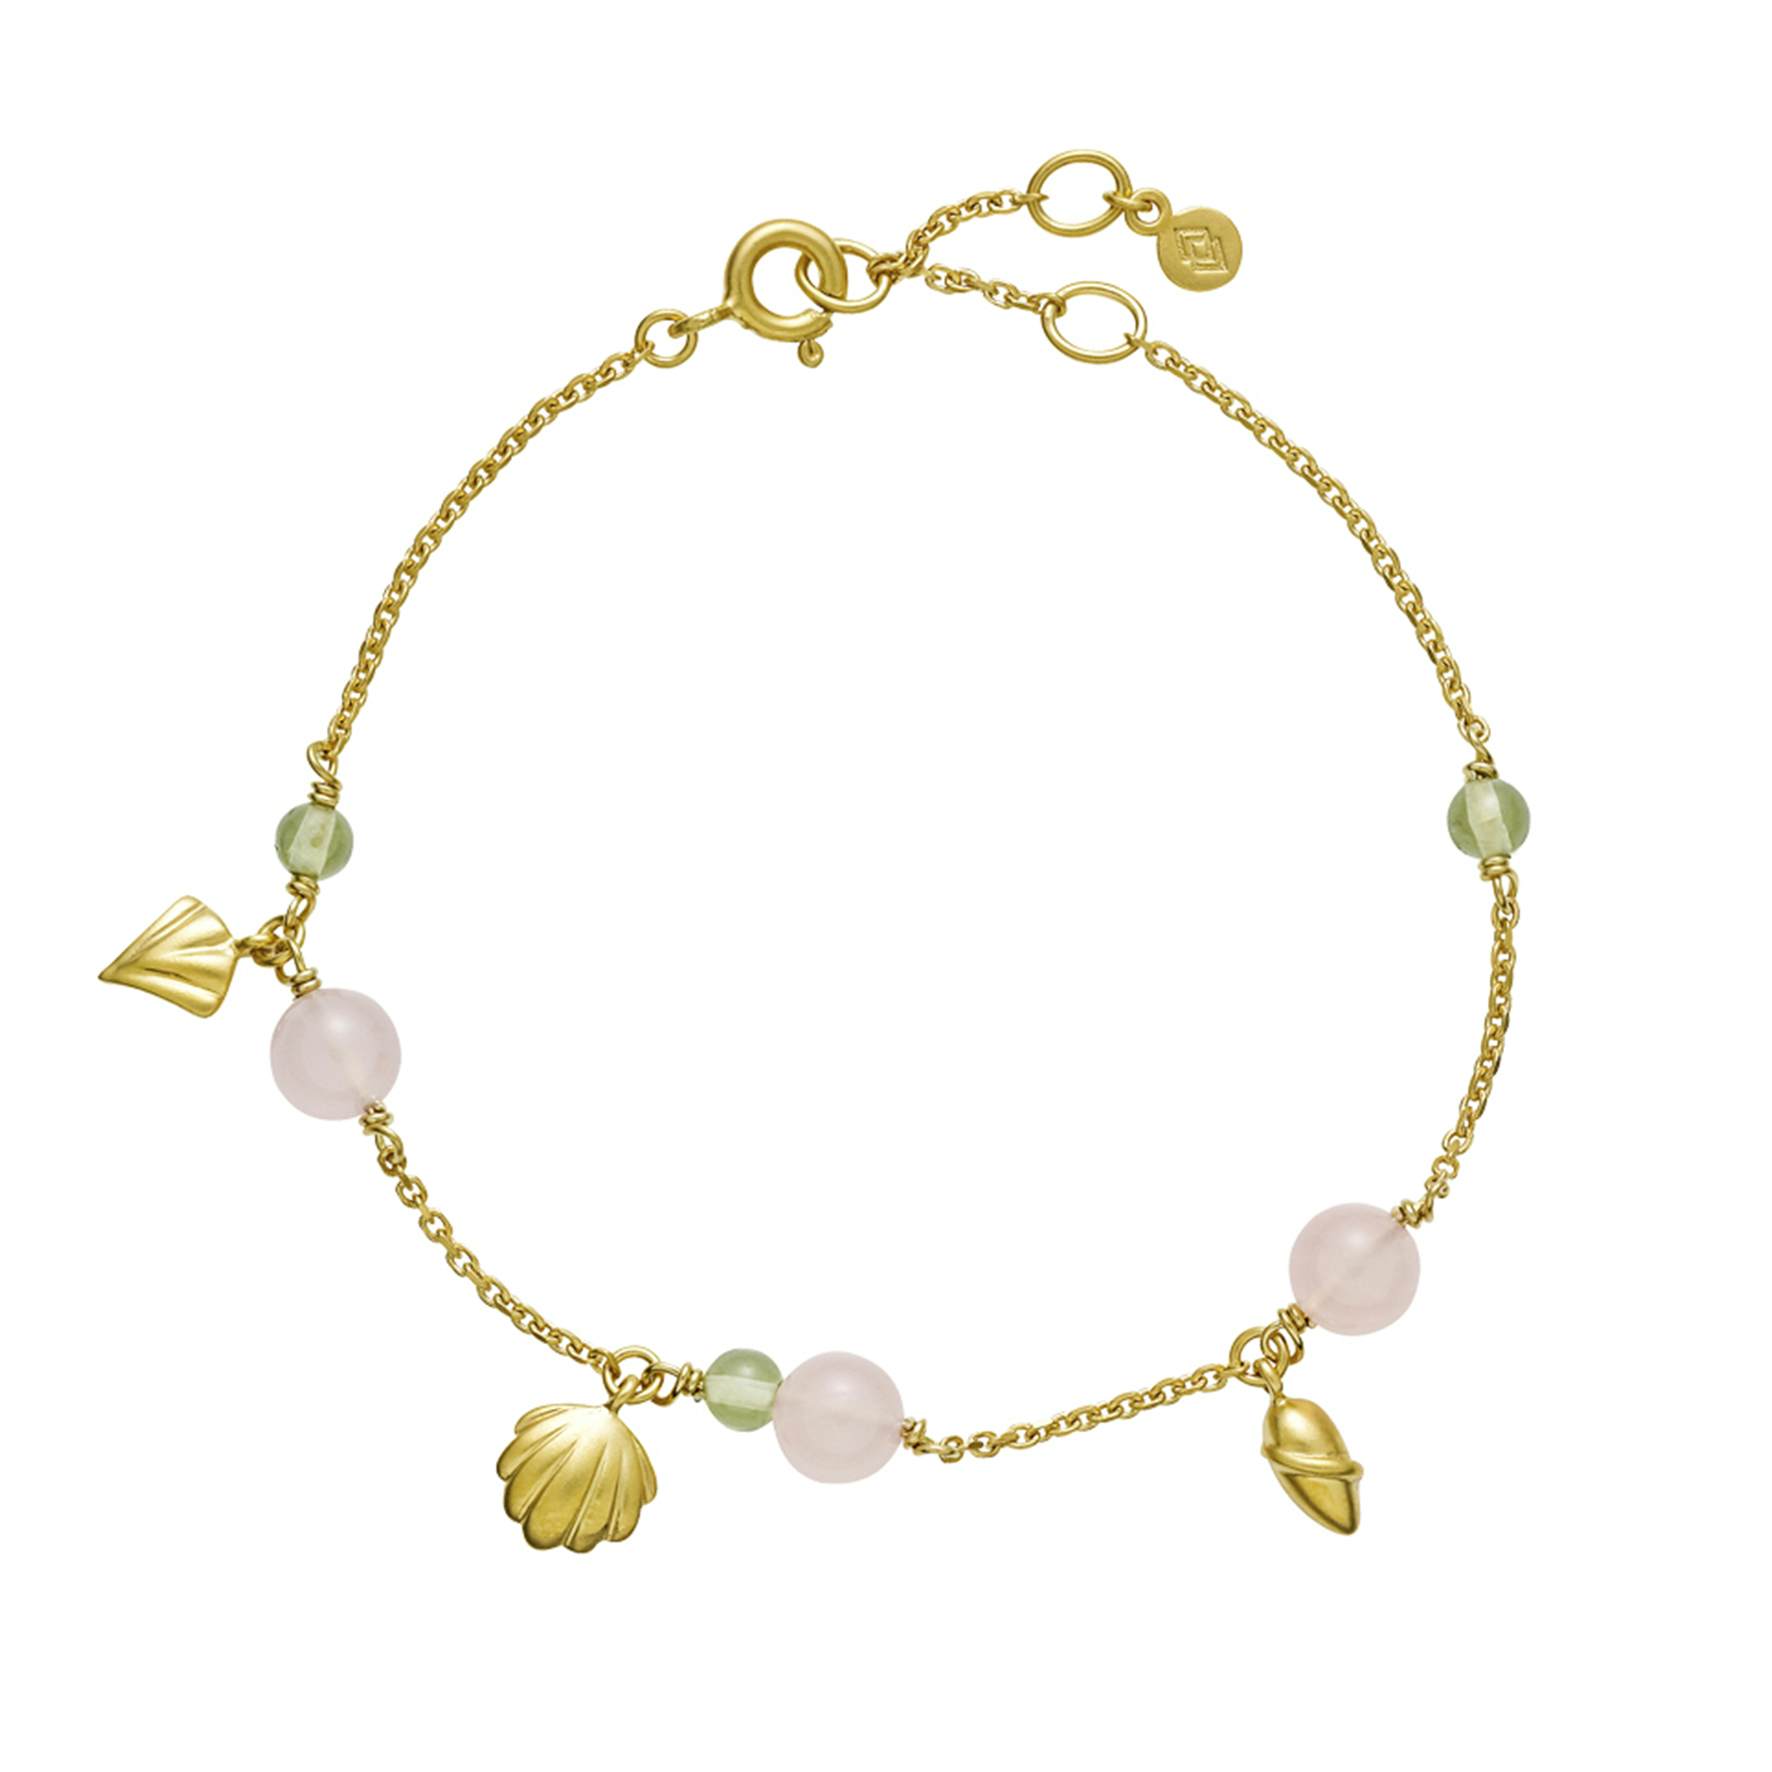 Isabella Pink/Green Bracelet von Izabel Camille in Vergoldet-Silber Sterling 925